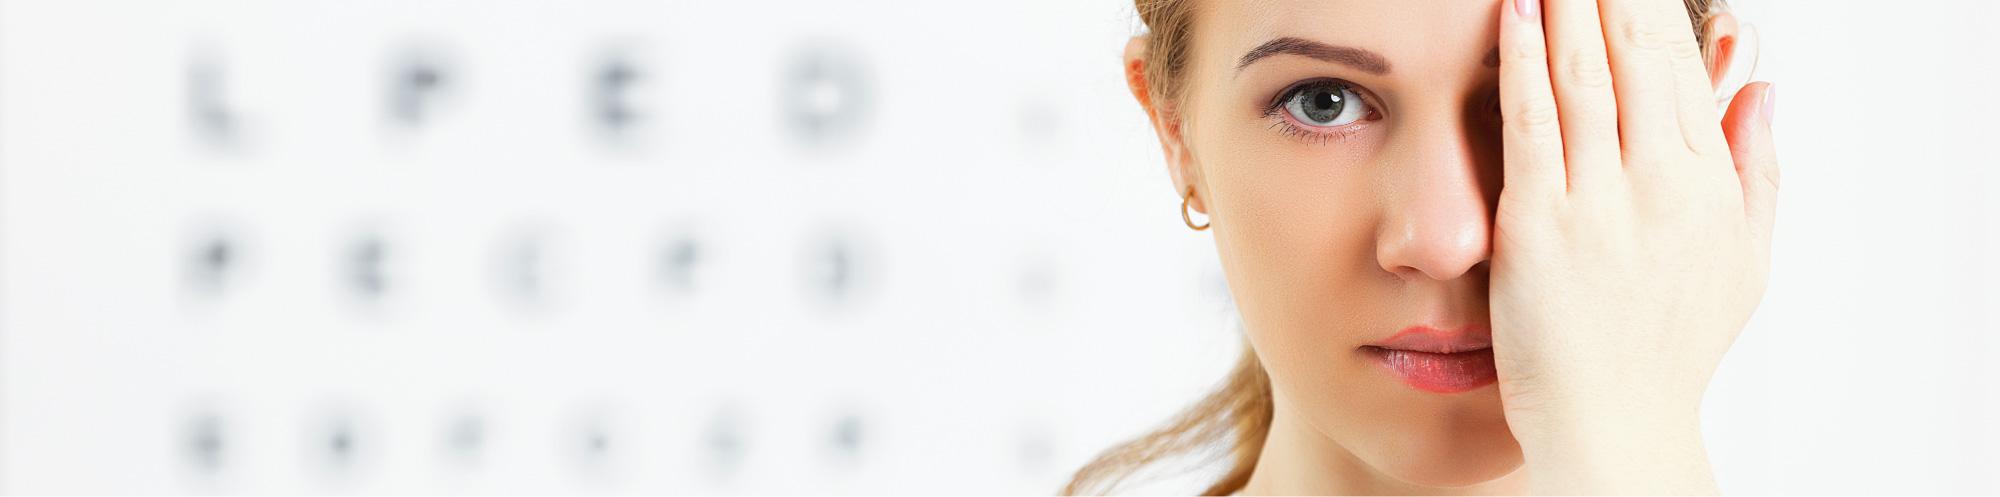 YAG-Laser (Kapsulotomie)  - Augenarztpraxis Buchen